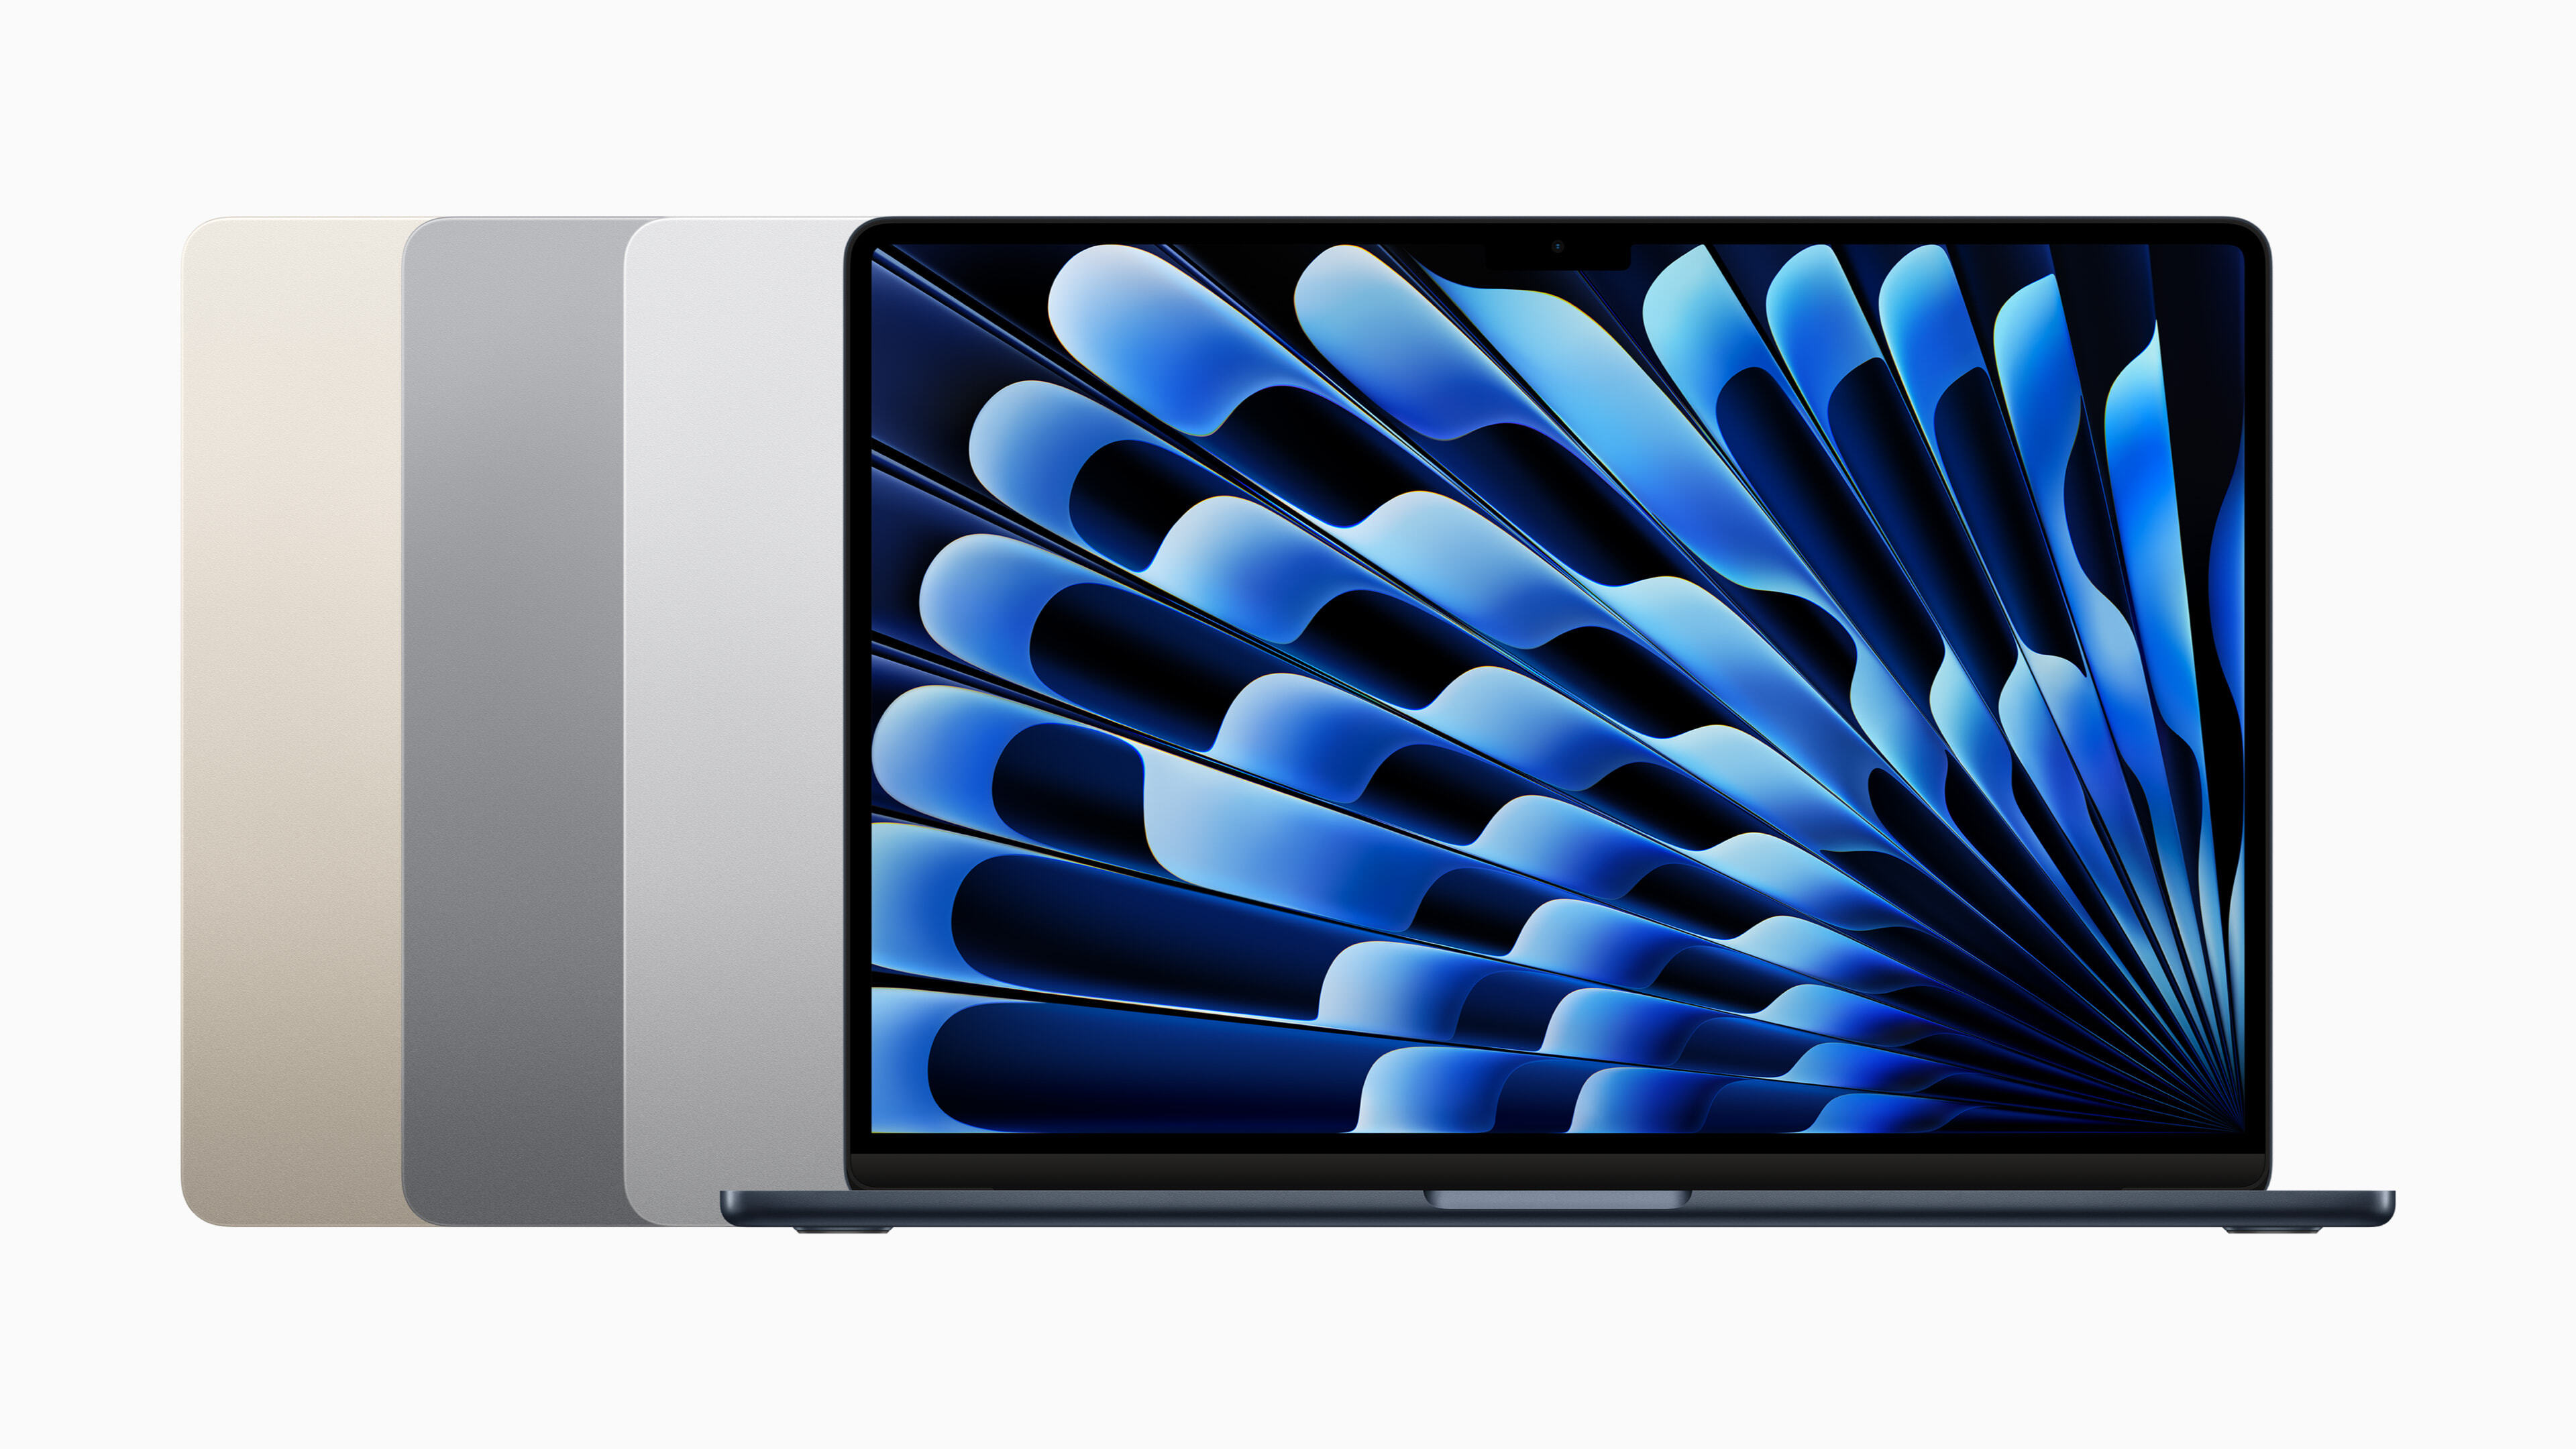 配備寬廣的 15.3 吋 Liquid Retina 顯示器、M2 的效能、長達 18 小時的電池續航力和六揚聲器音響系統，全納入在輕薄無風扇的設計中，新款 MacBook Air 是世界最優秀的 15 吋筆記型電腦